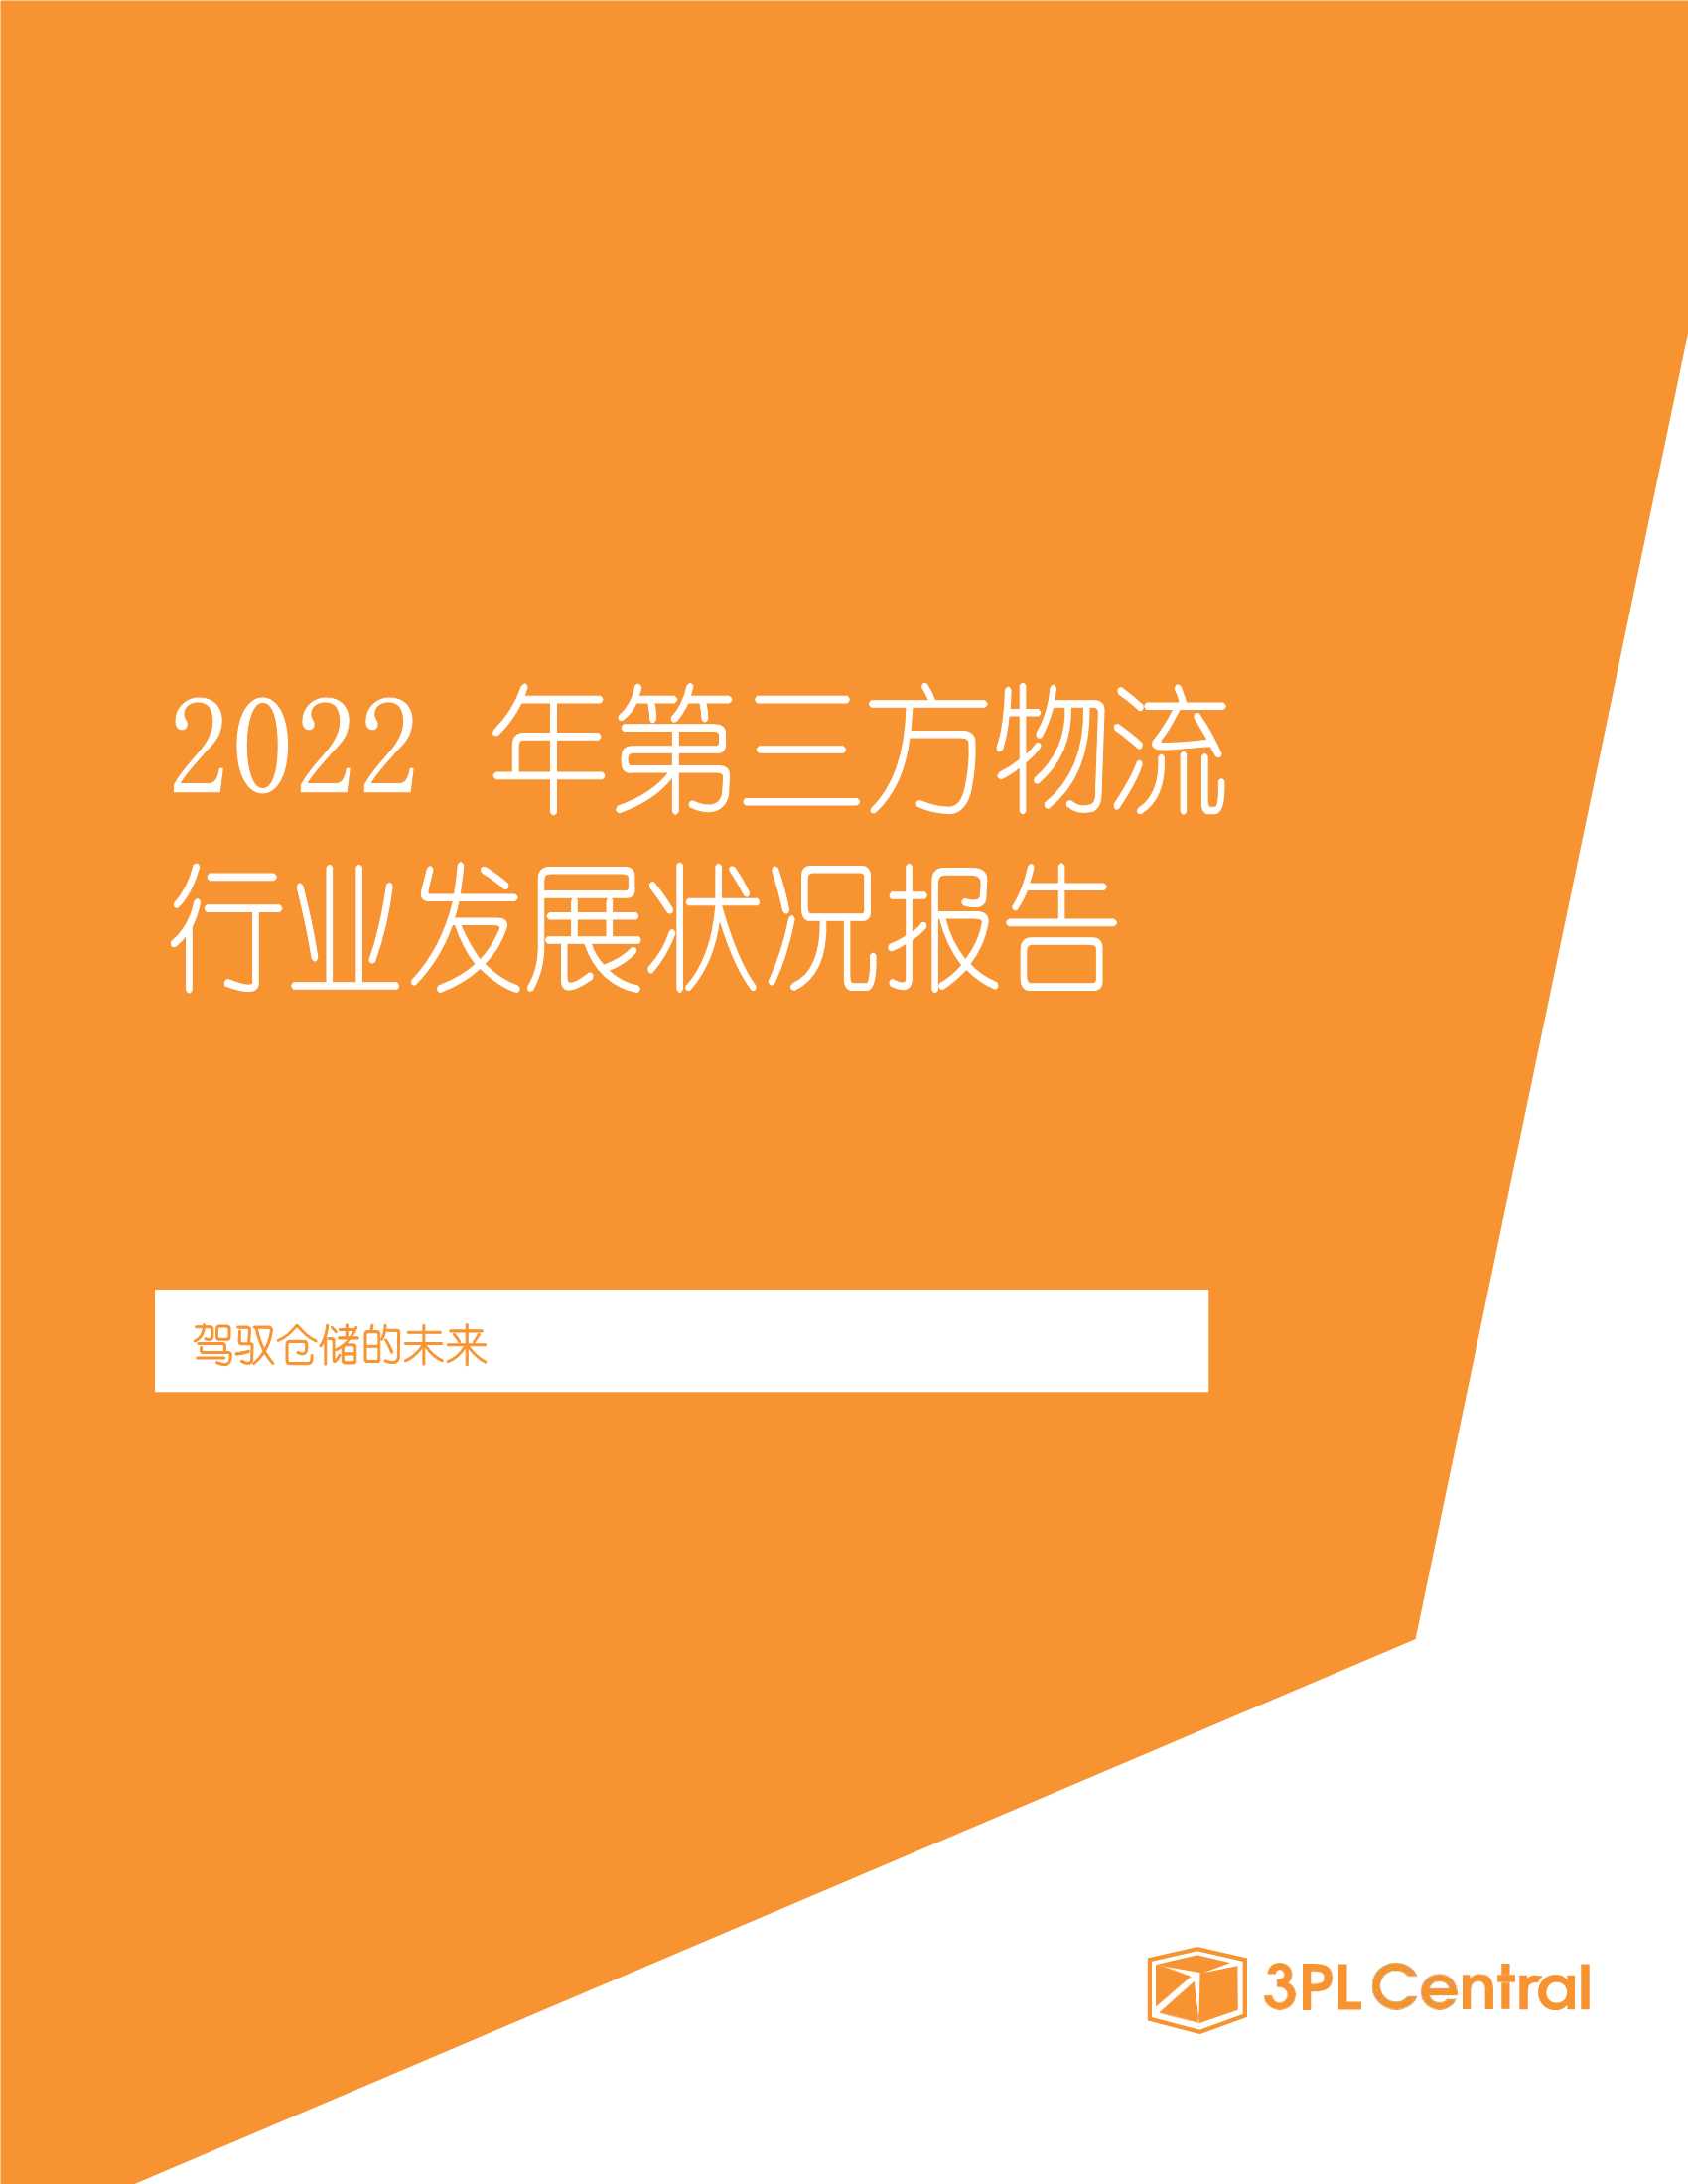 2022年第三方物流行业发展状况报告（中文版）-2022.03-22页